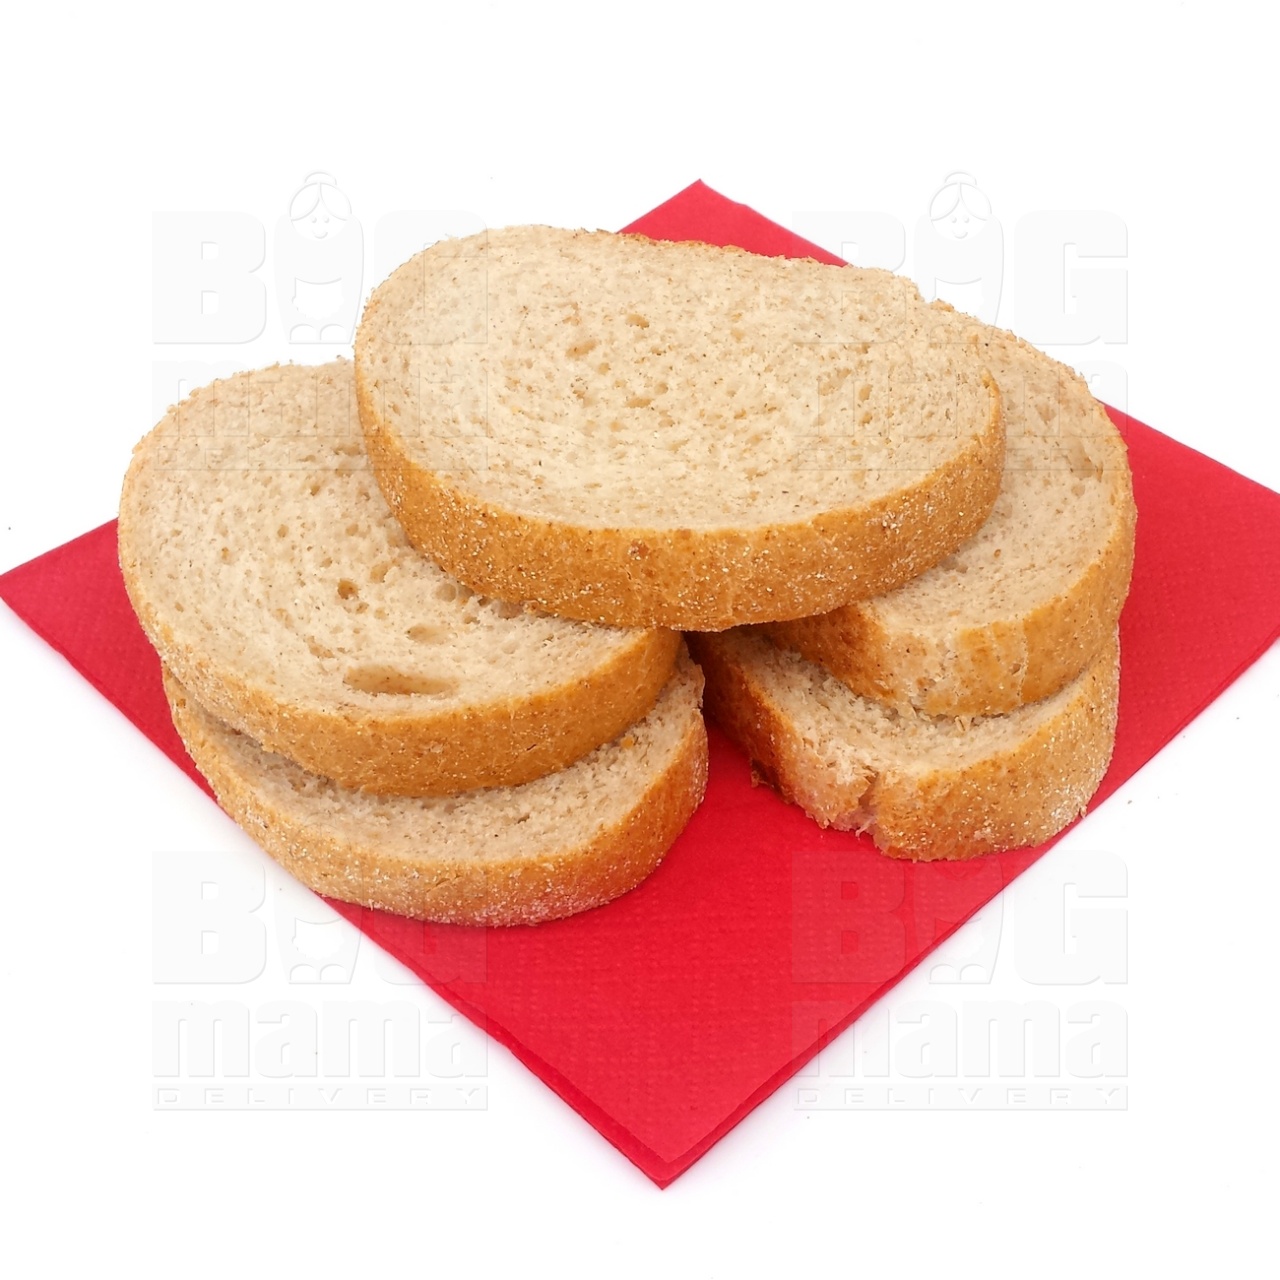 Product #165 image - Pâine brună